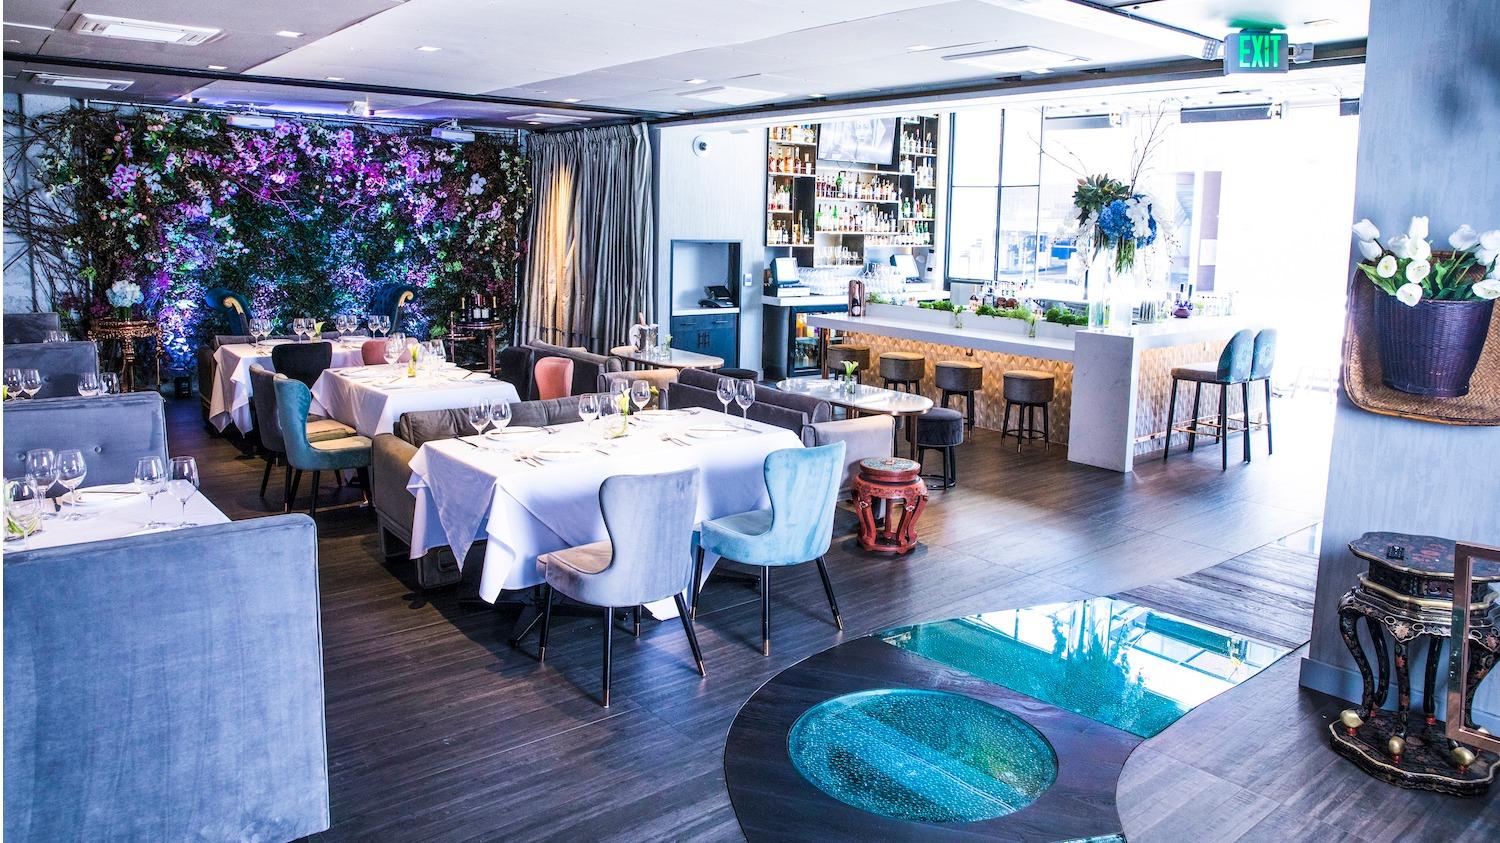 Crustacean Restaurant Beverly Hills - Brunch, Lunch & Fine Dining